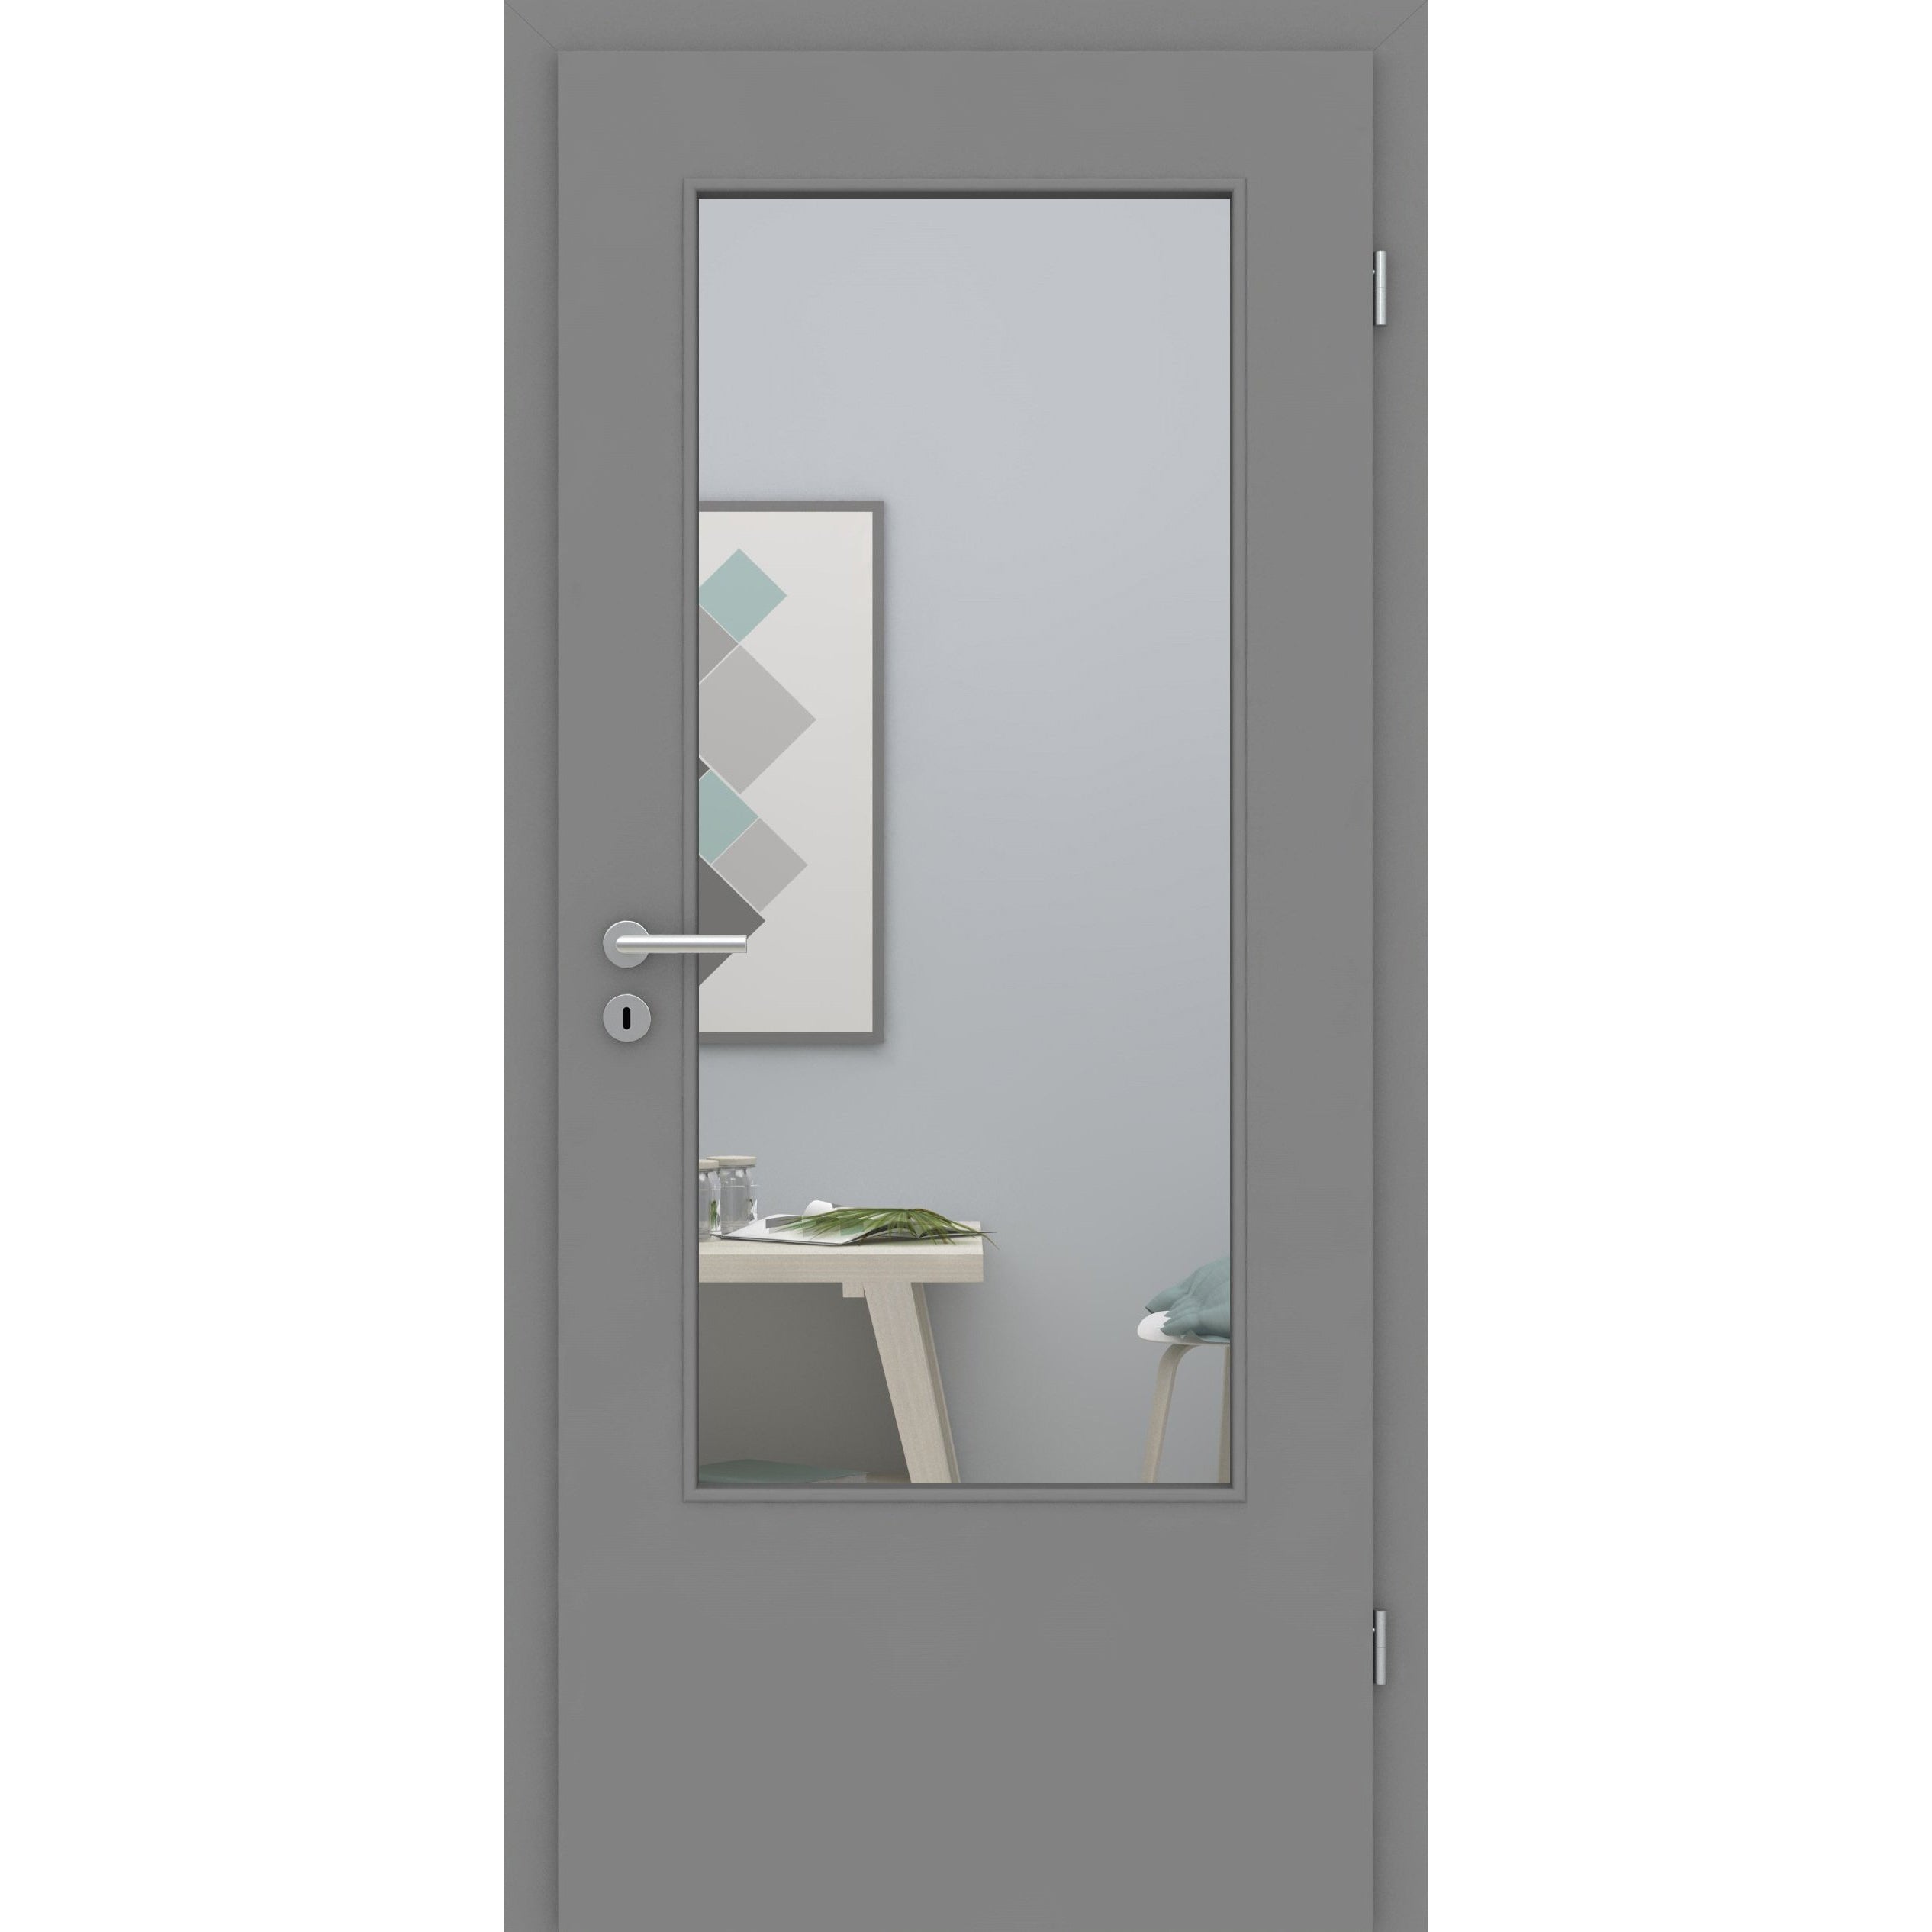 Zimmertür mit Lichtausschnitt DIN grau glatt Designkante - Modell LADIN